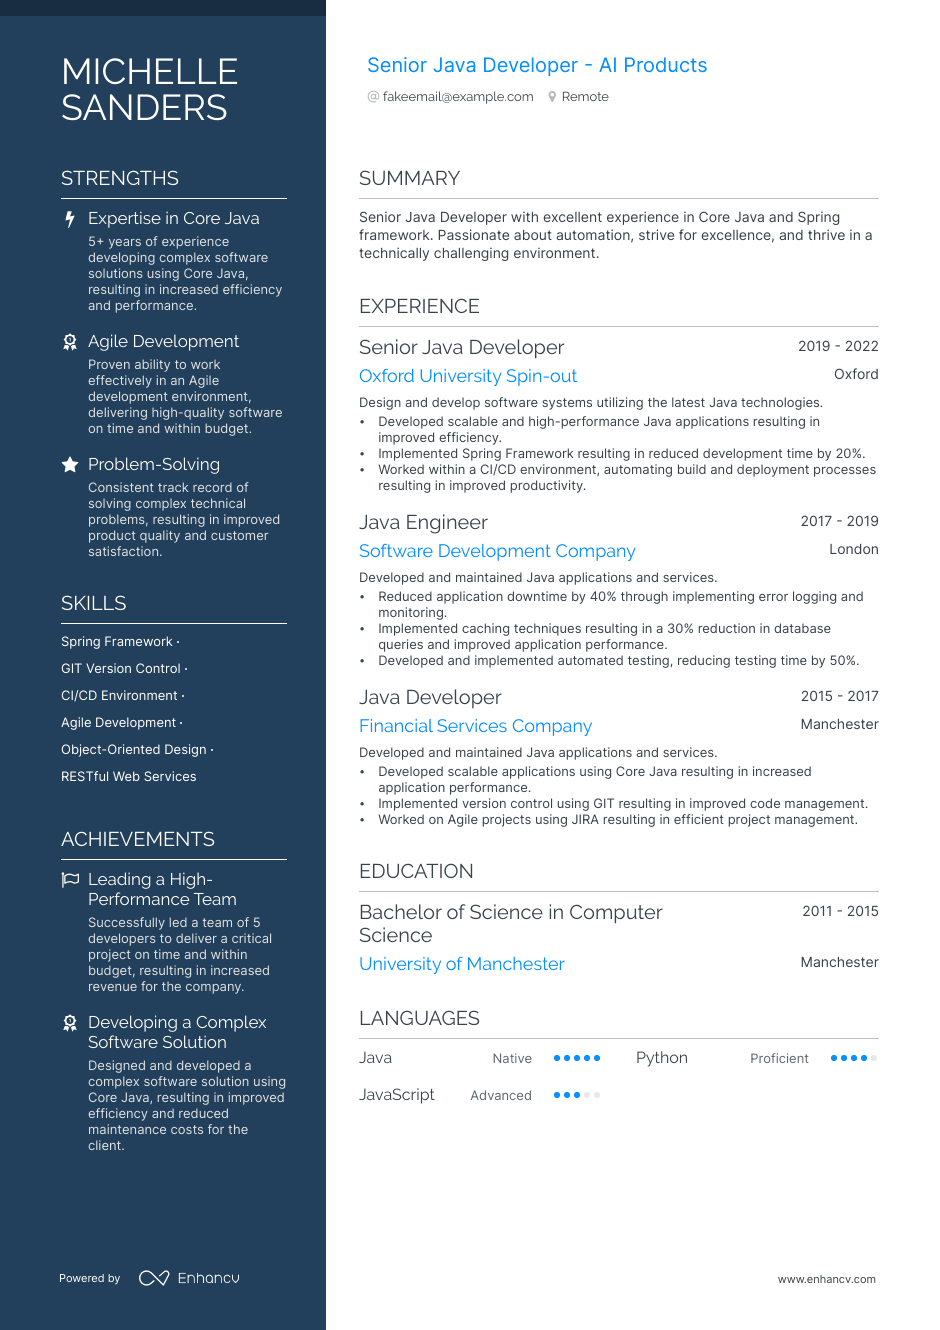 Senior Java Developer resume example